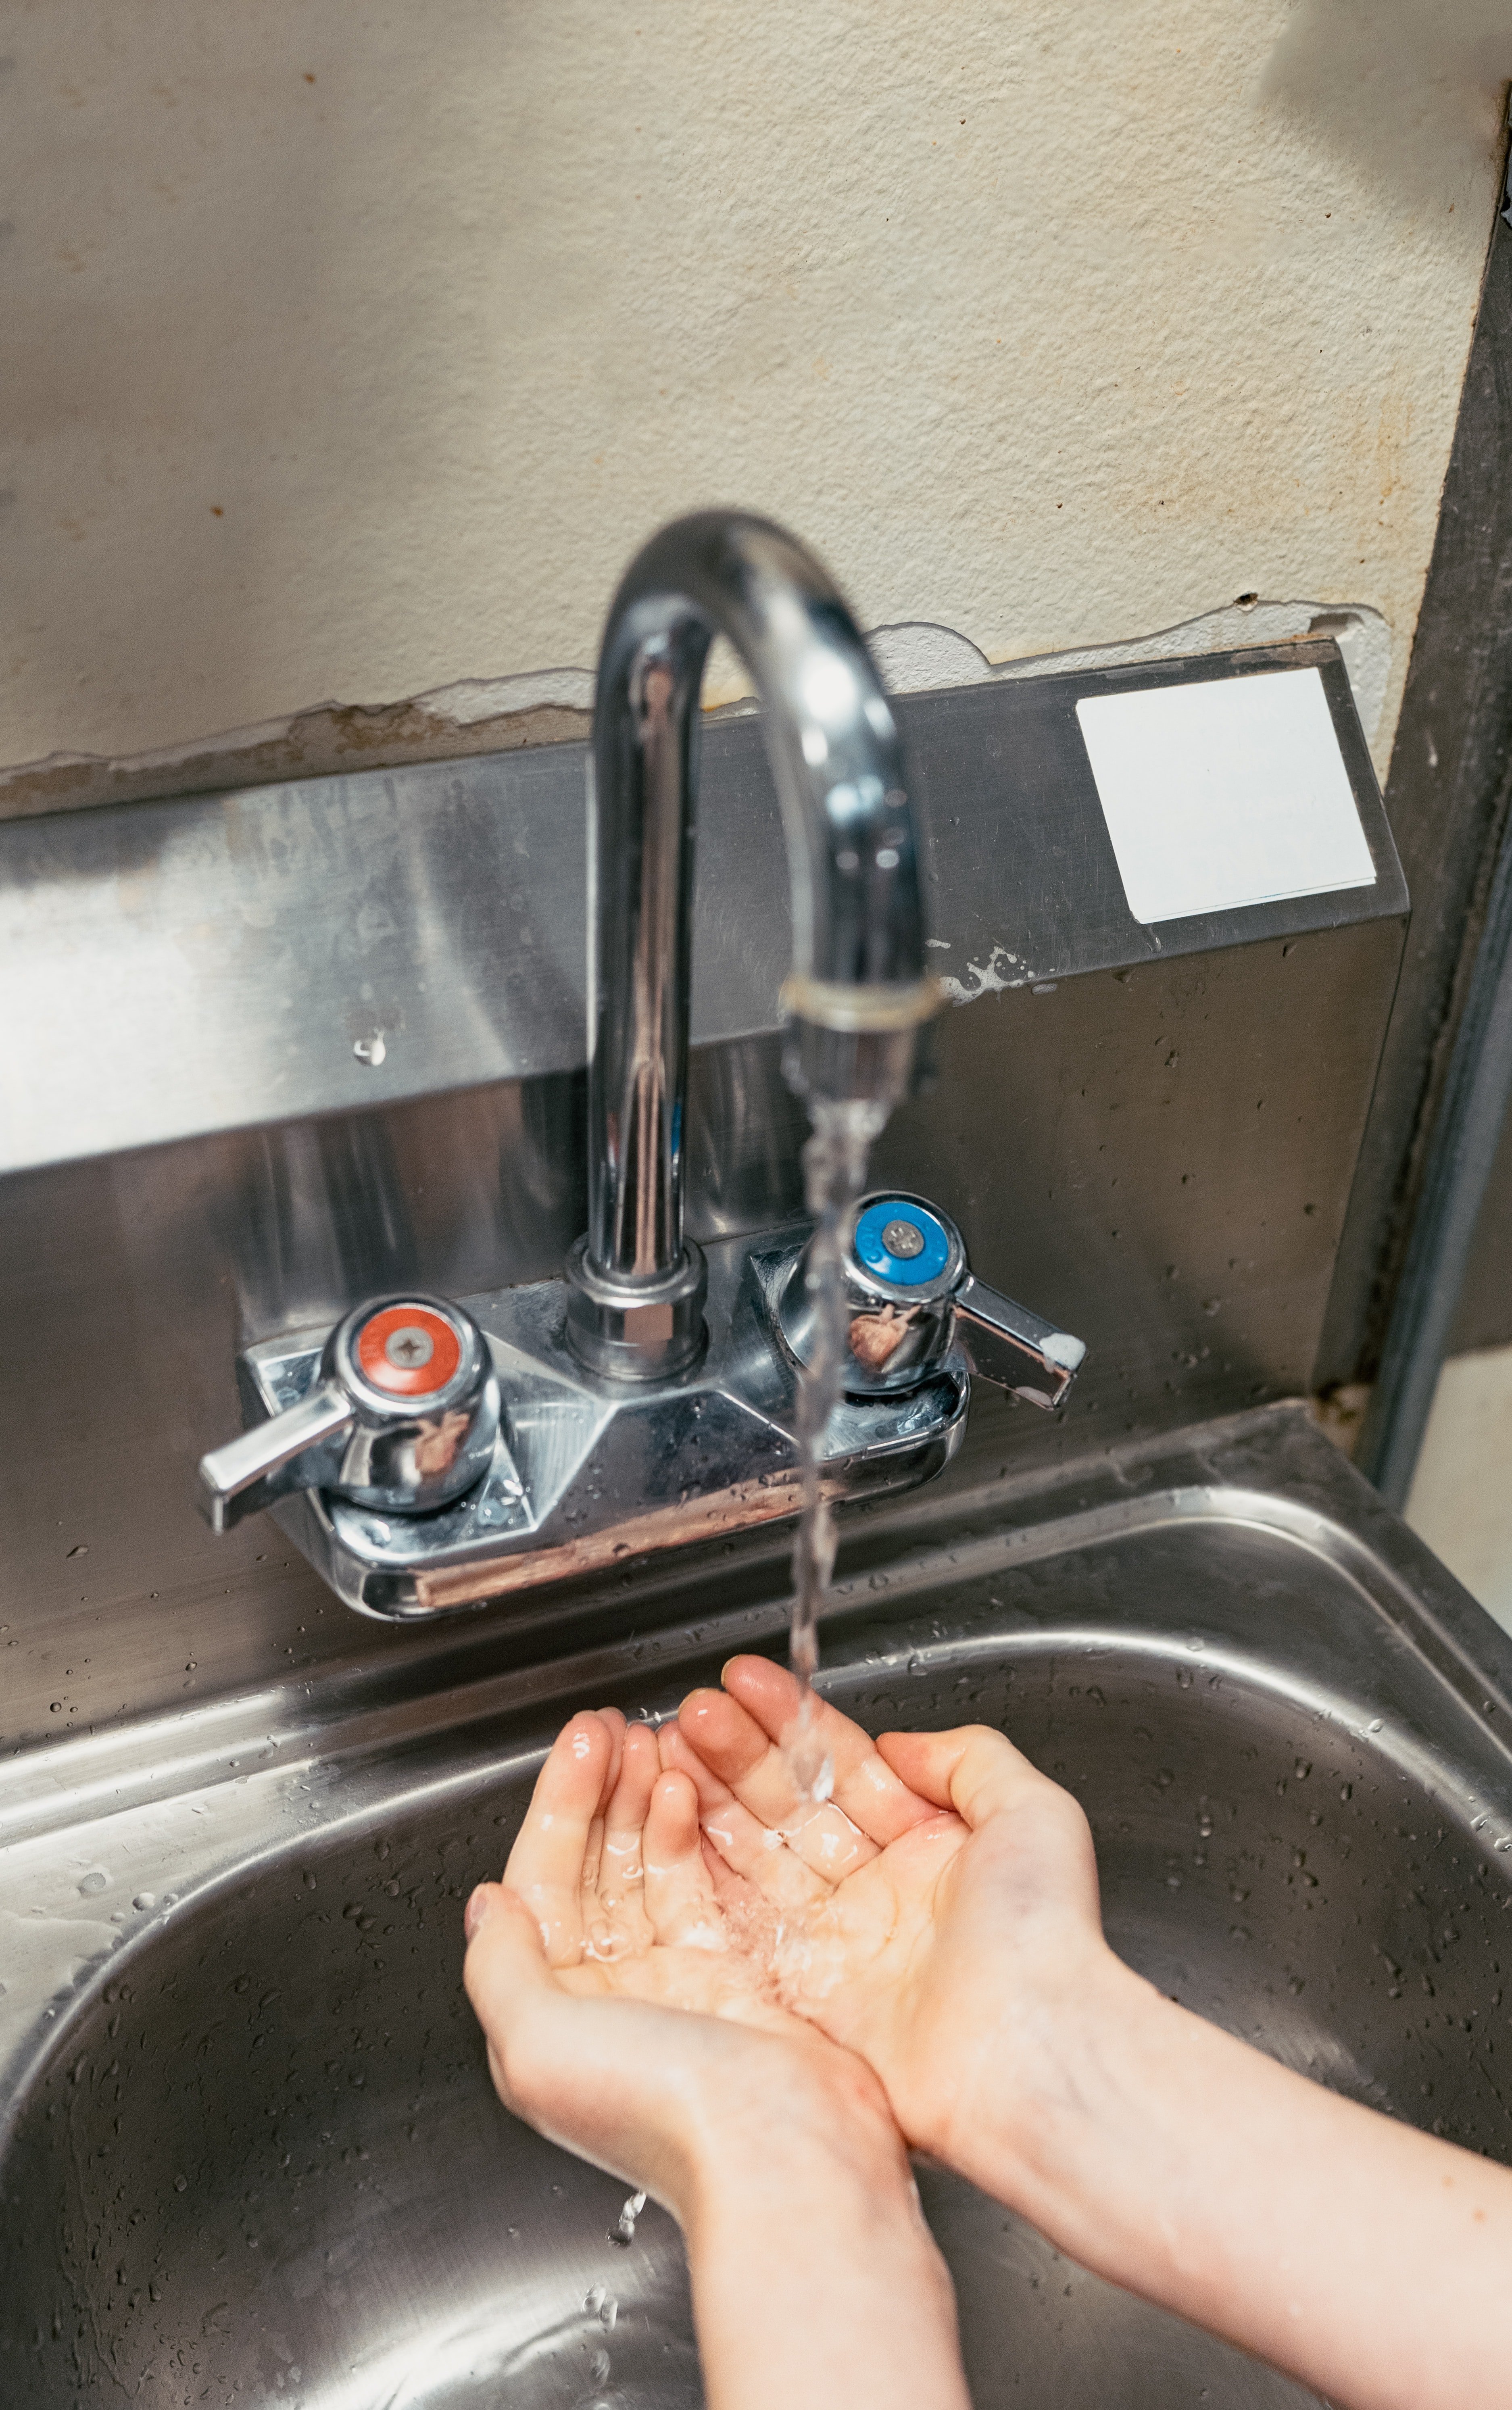 VÍDEO | Cómo lavarse las manos para evitar el coronavirus